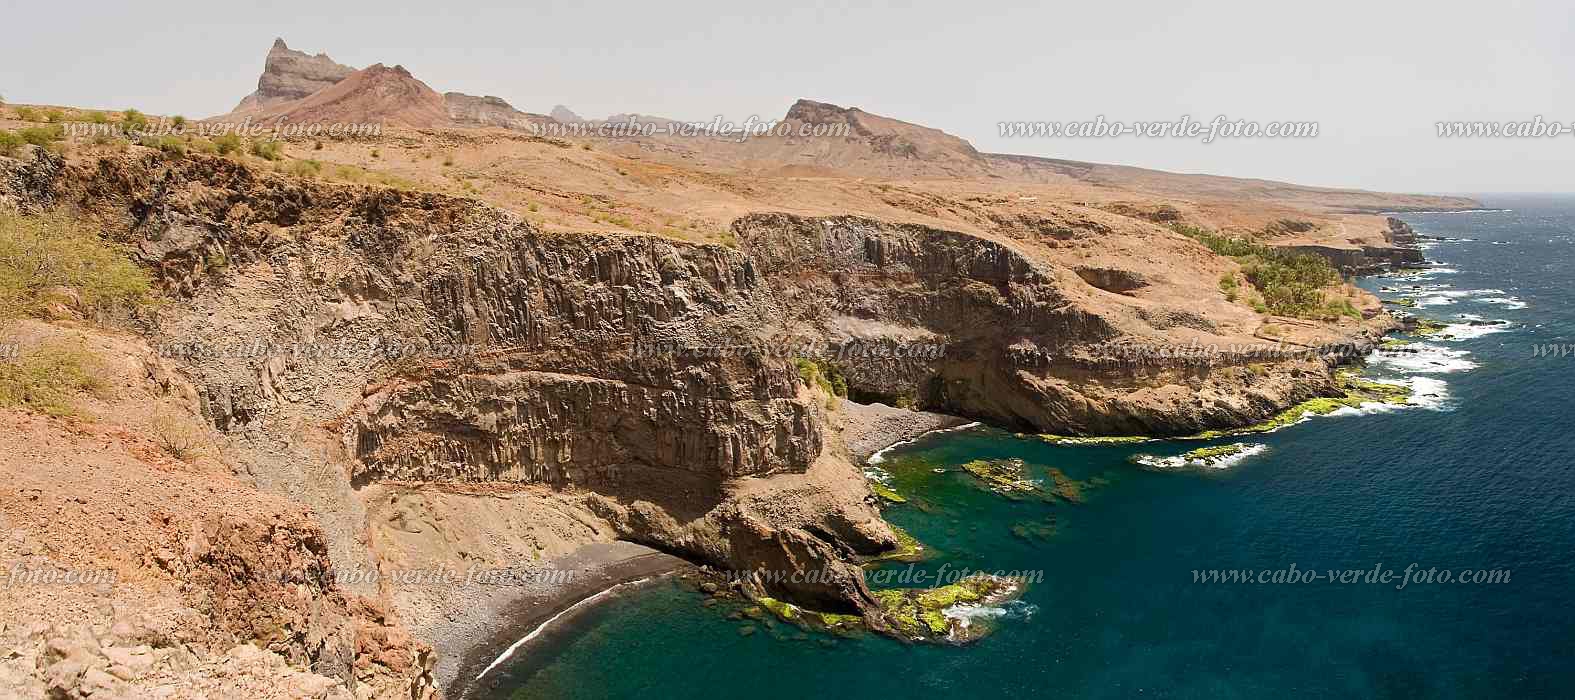 Santiago :  :  : Landscape SeaCabo Verde Foto Gallery